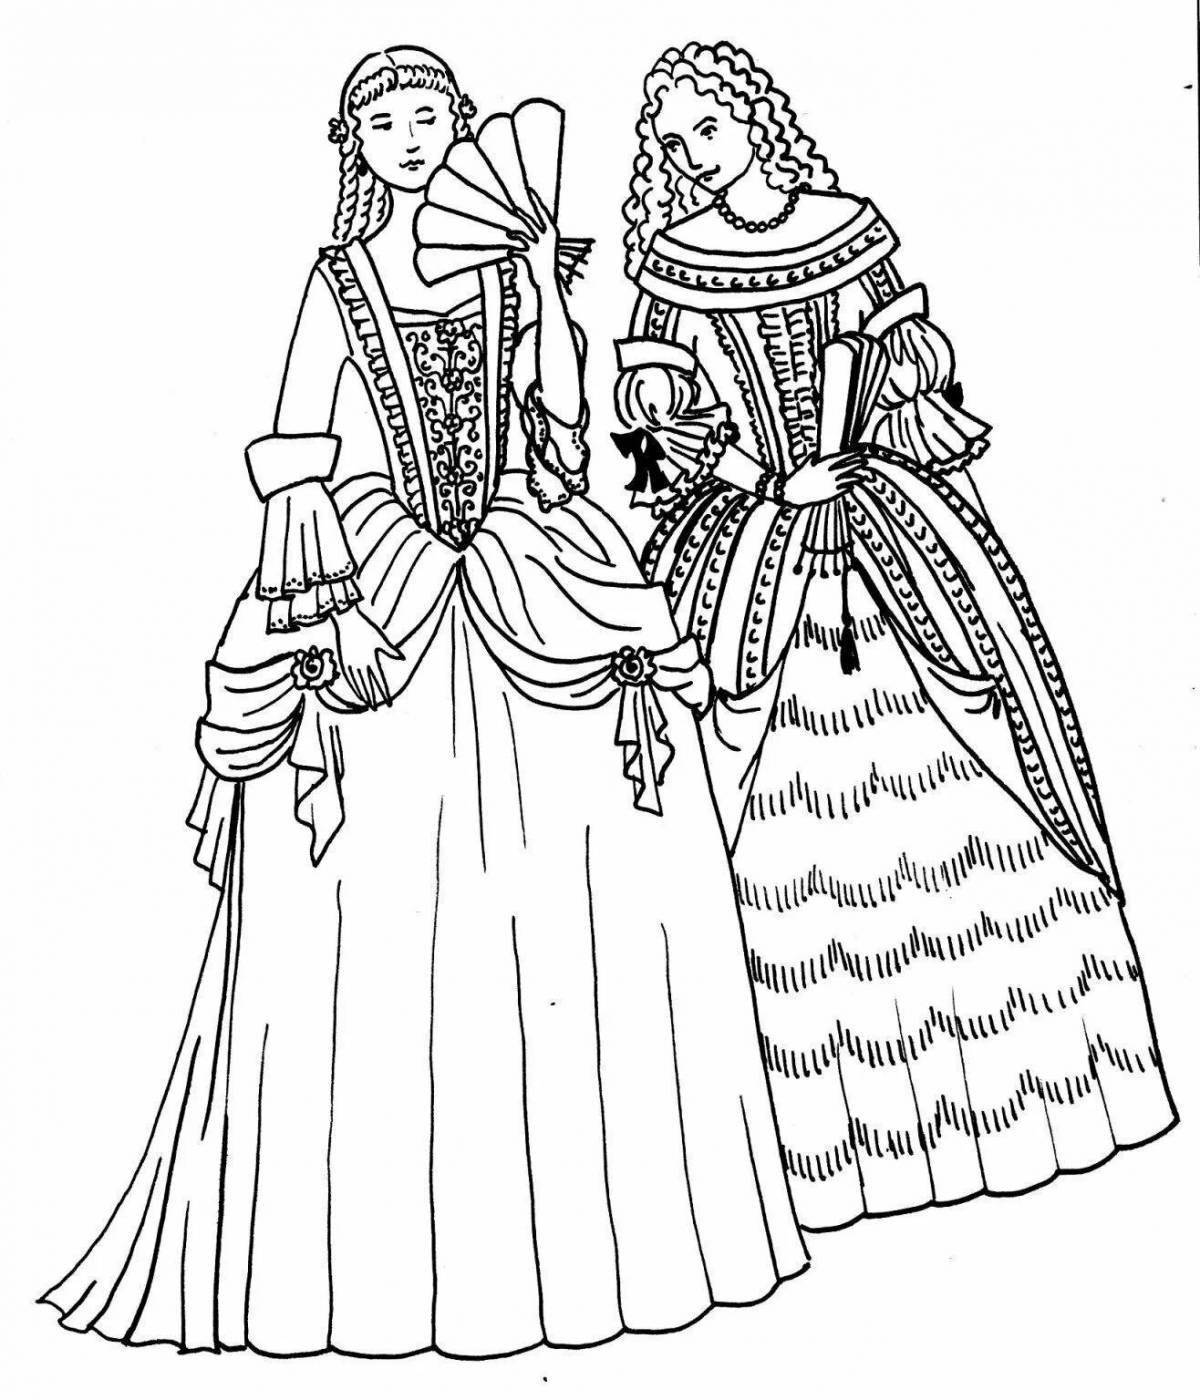 Бал 17 века рисунок. Костюм Барокко 17 века рисунок. Одежда Западной Европы 17 века в стиле Барокко. Костюм средневековья Западной Европы 17 века.